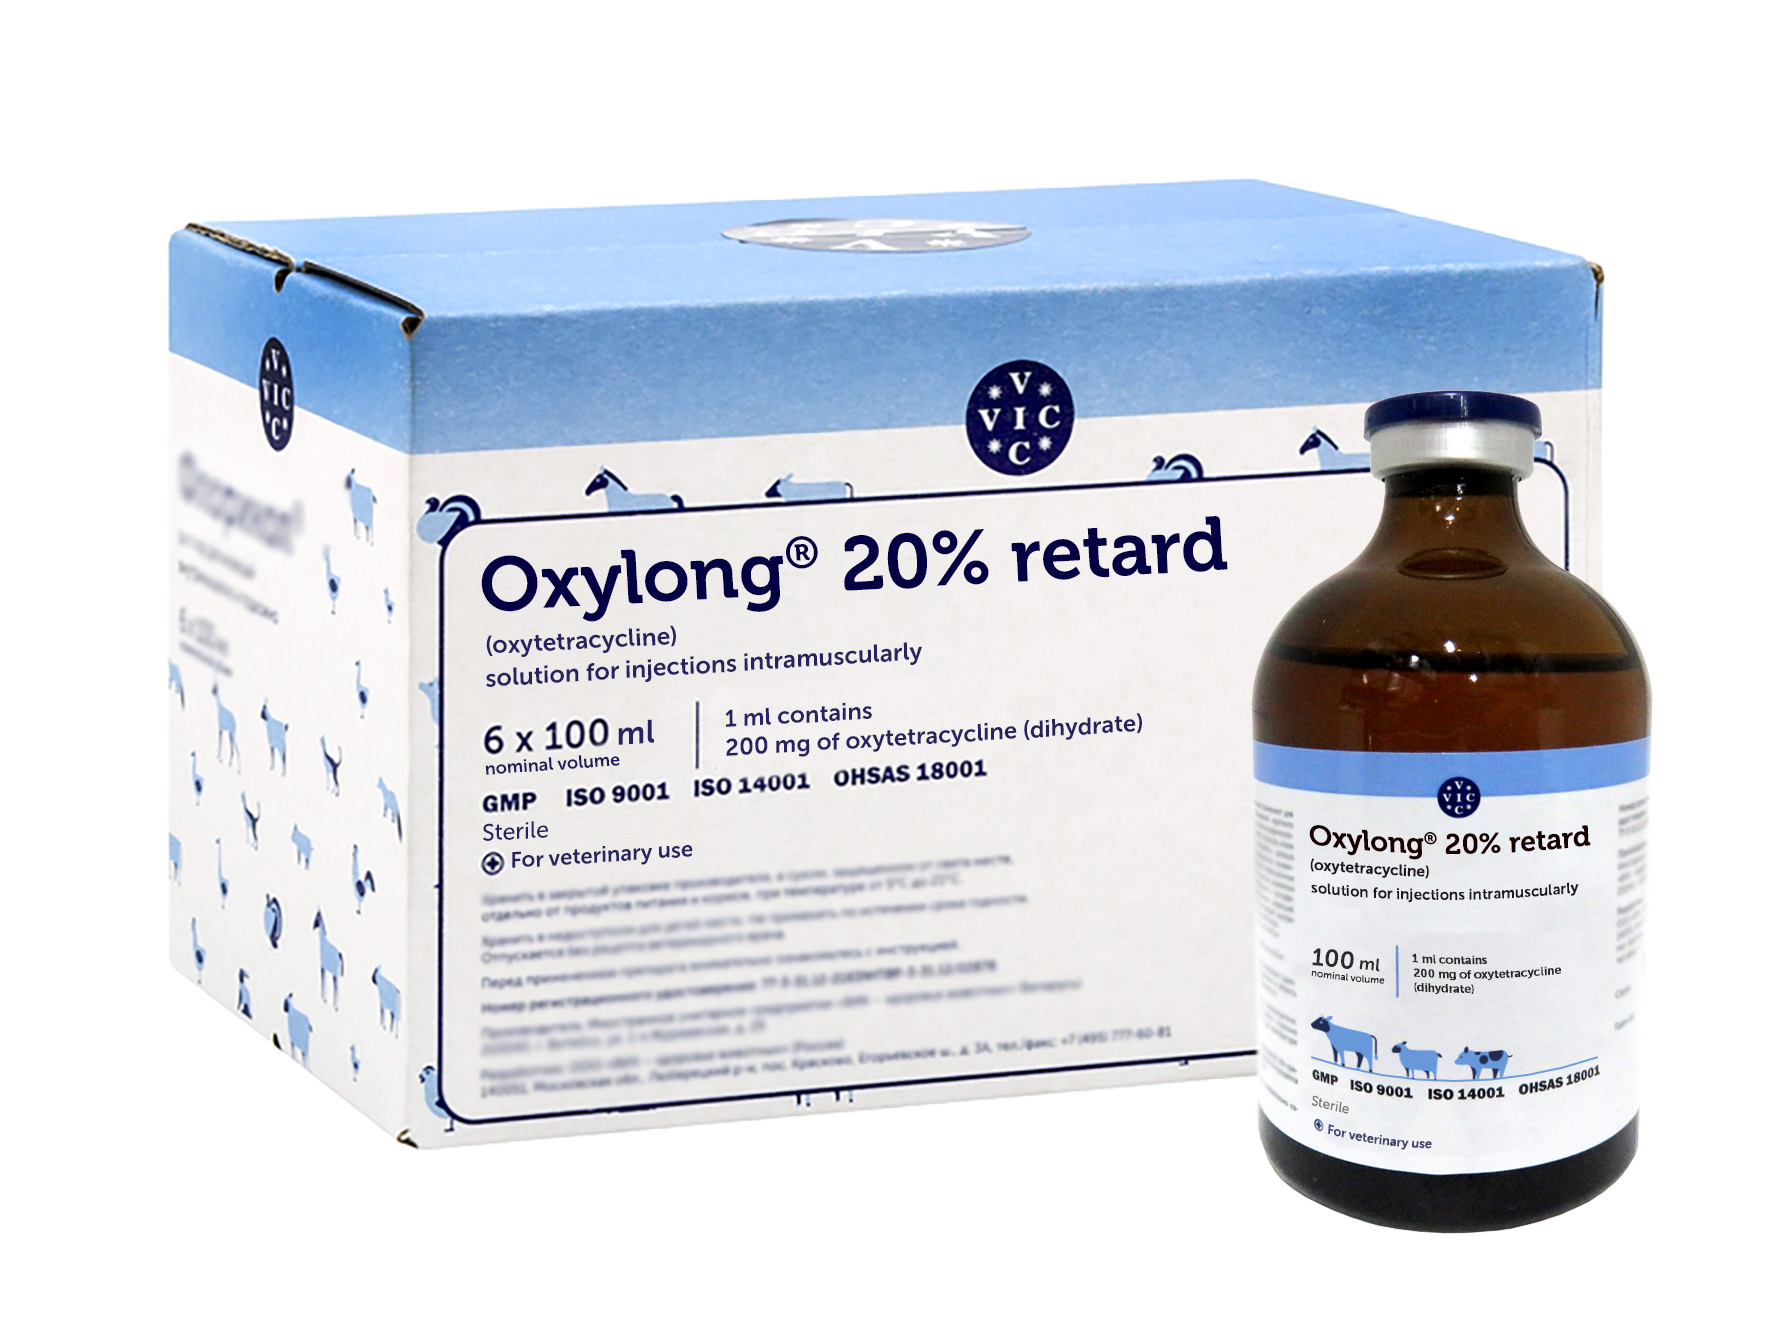 Oxylong® 20% retard